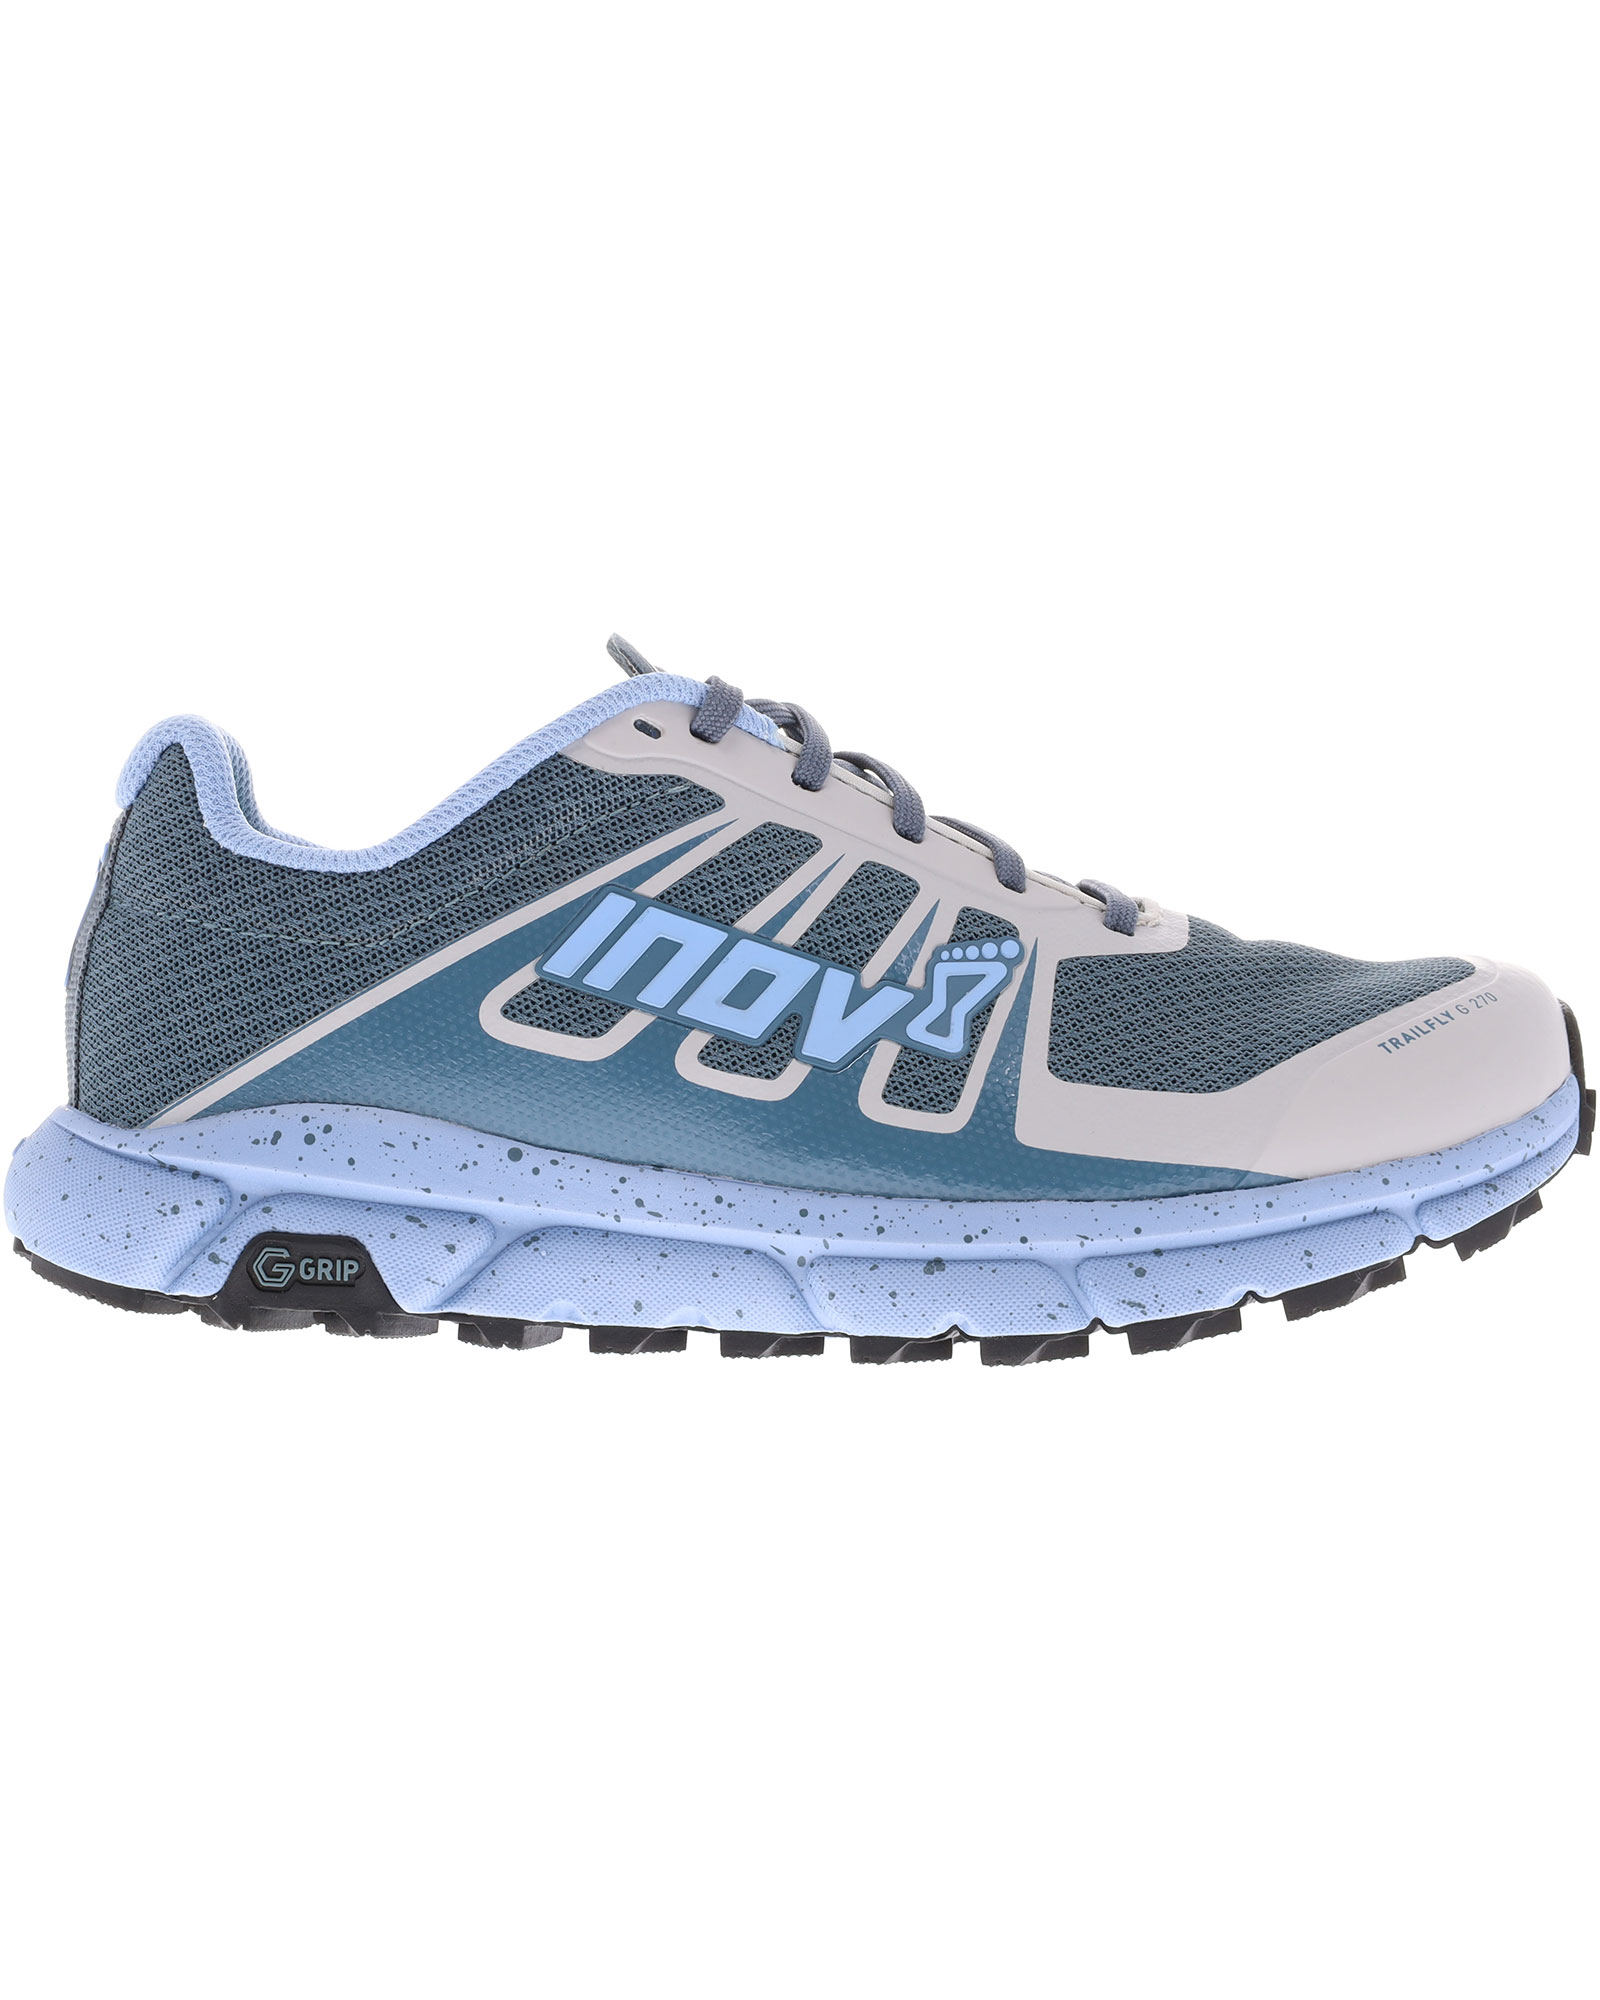 Inov 8 TrailFly G 270 V2 Women’s Trail Shoes - Blue/Grey UK 7.5